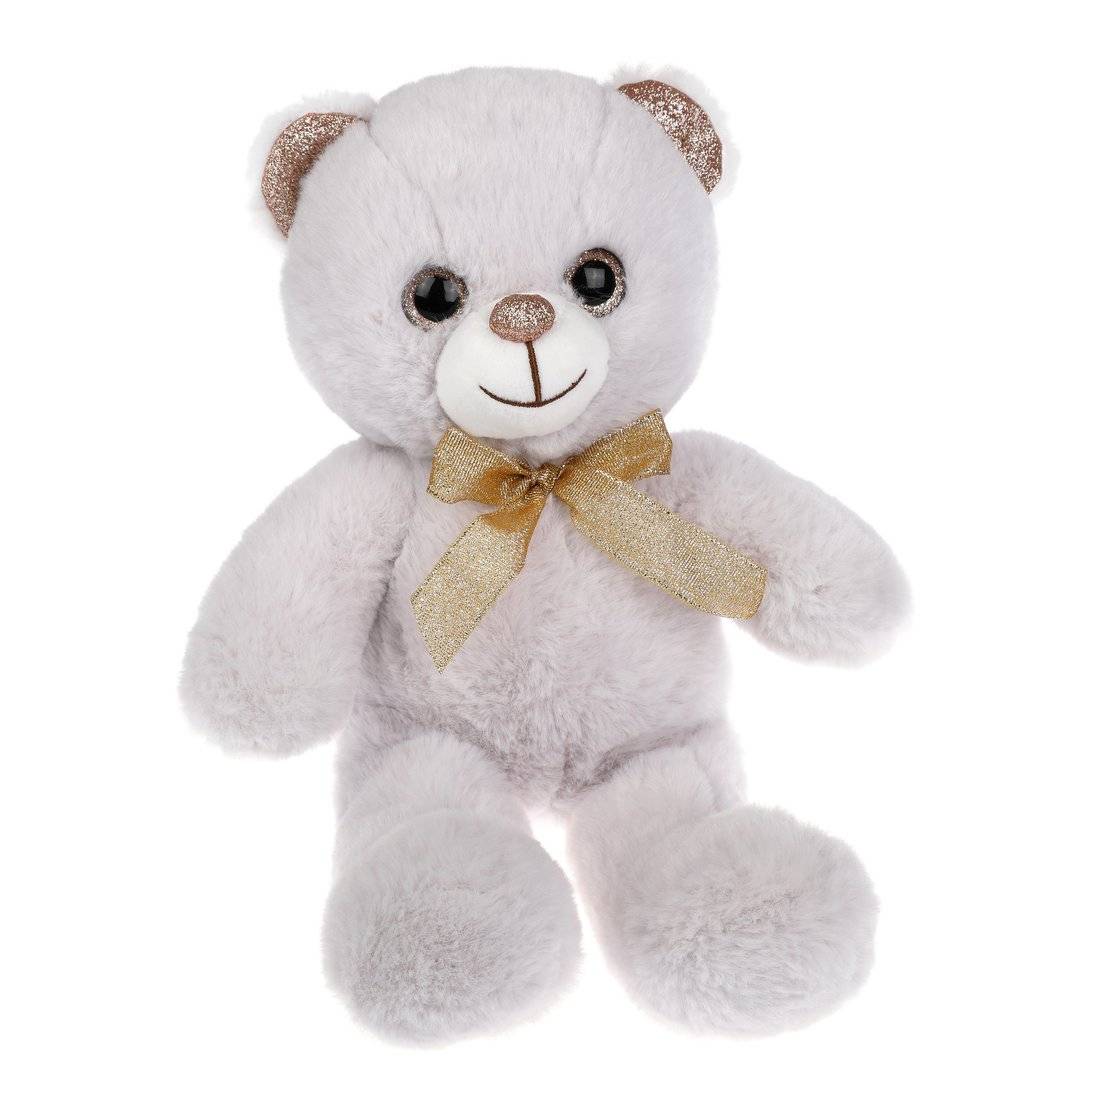 Мягкая игрушка Мишка Красавчик белый, 22 см. Fluffy Family 681810